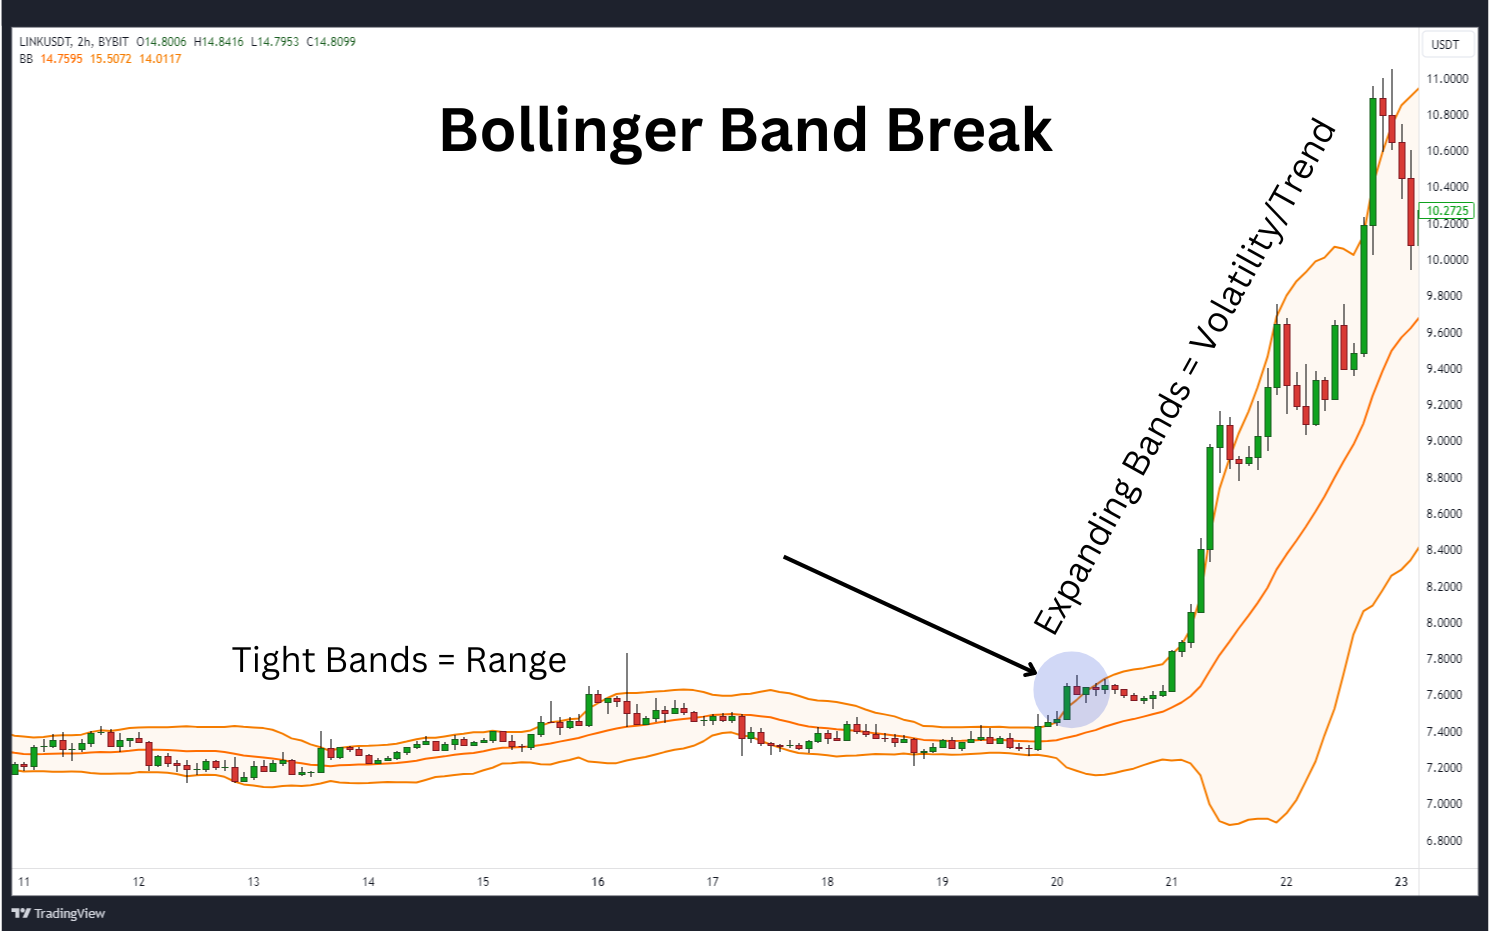 Bollinger bands breakout trading